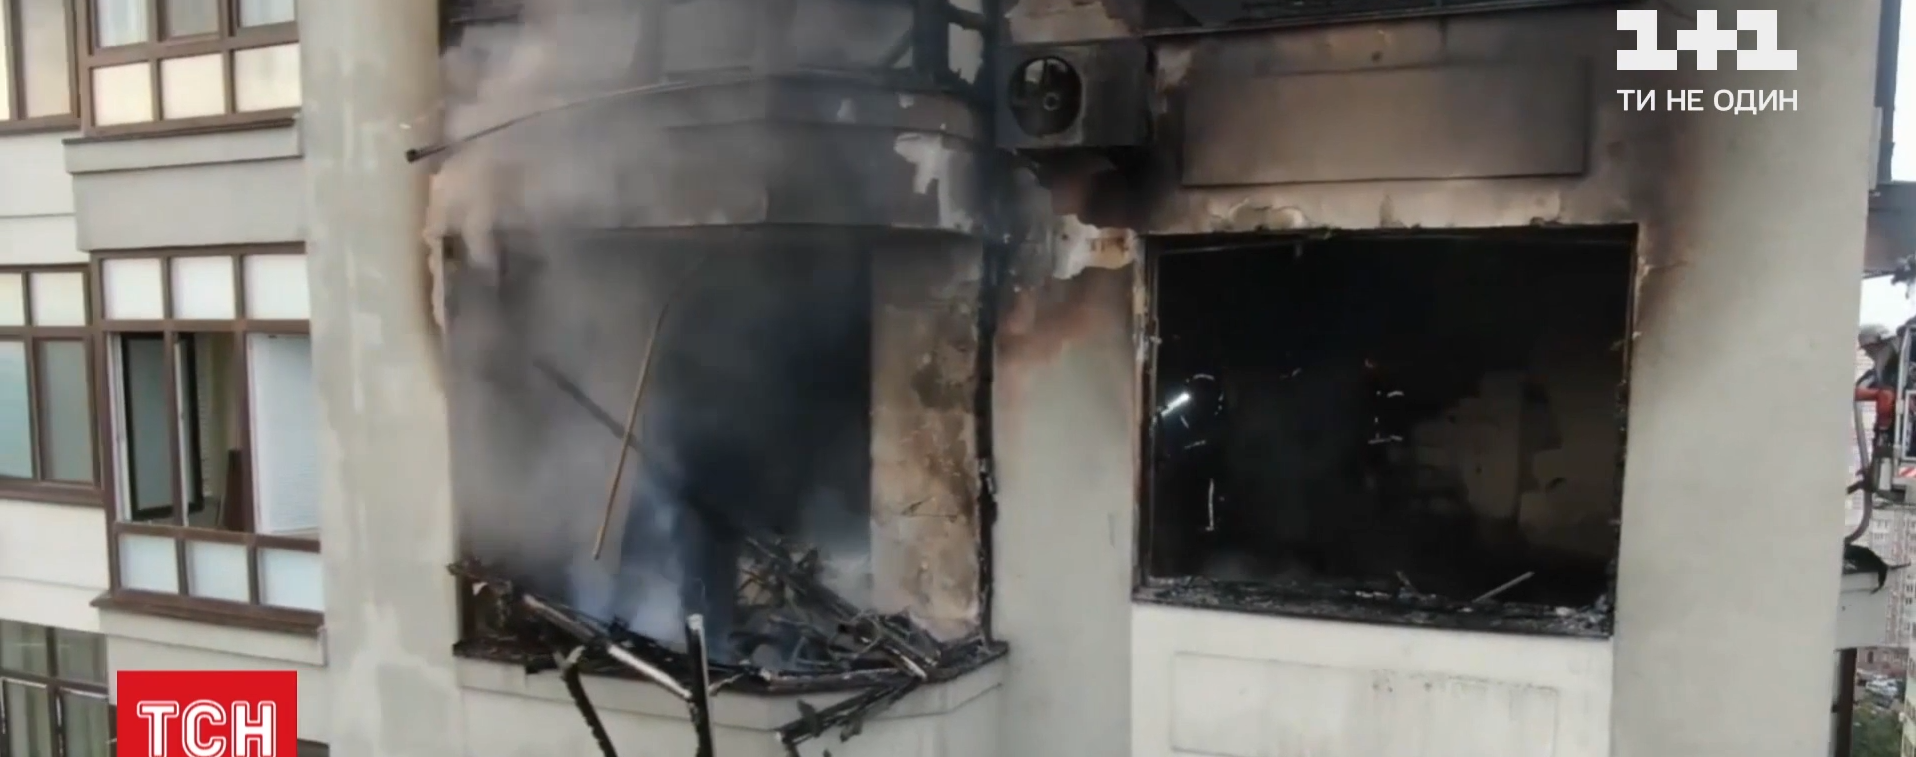 Пожар в многоэтажке Киева: в каком состоянии пострадавший и что мешало спасателям тушить огонь